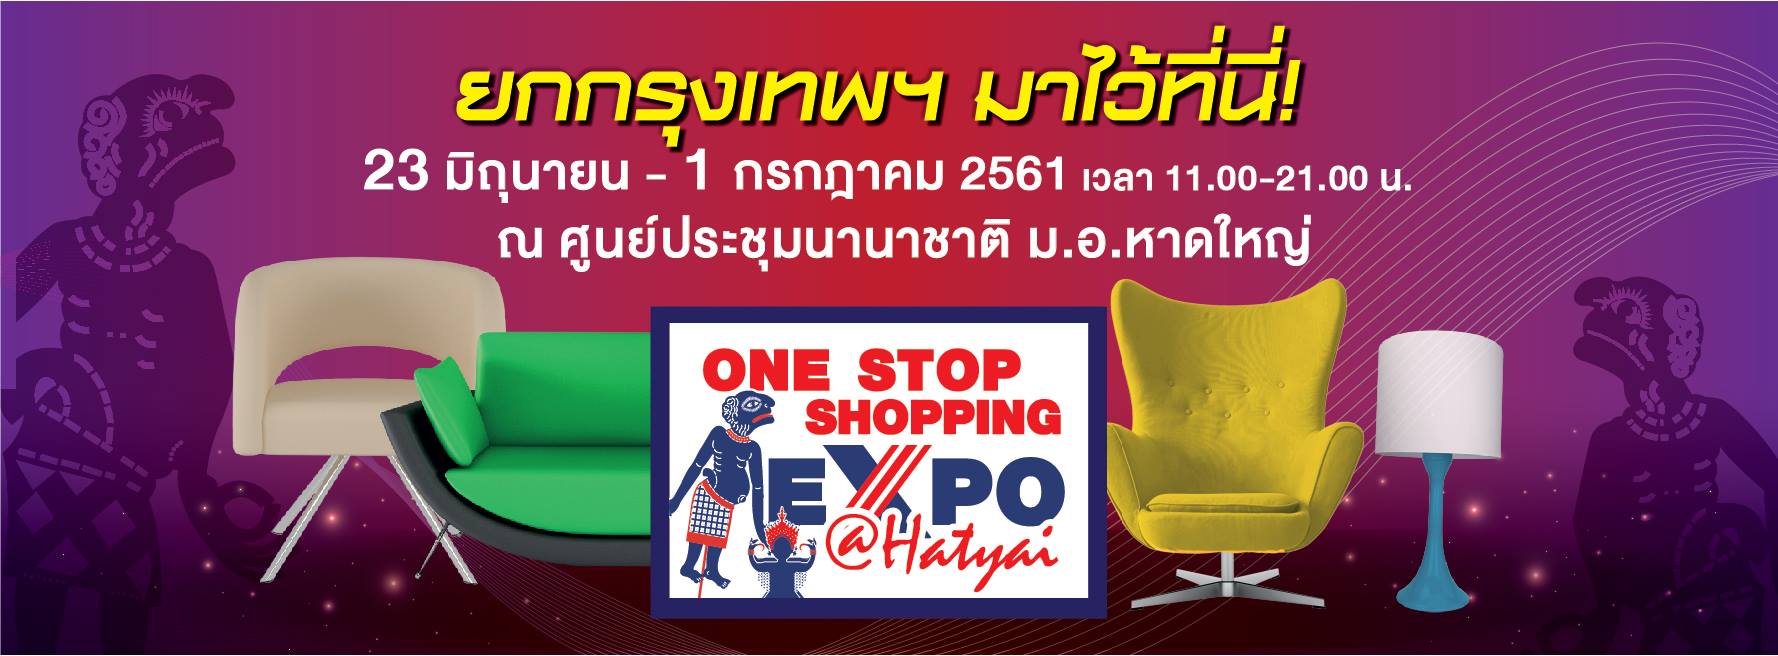 One Stop Shopping Expo @หาดใหญ่ 2018 (23 มิ.ย - 1 ก.ค 61)